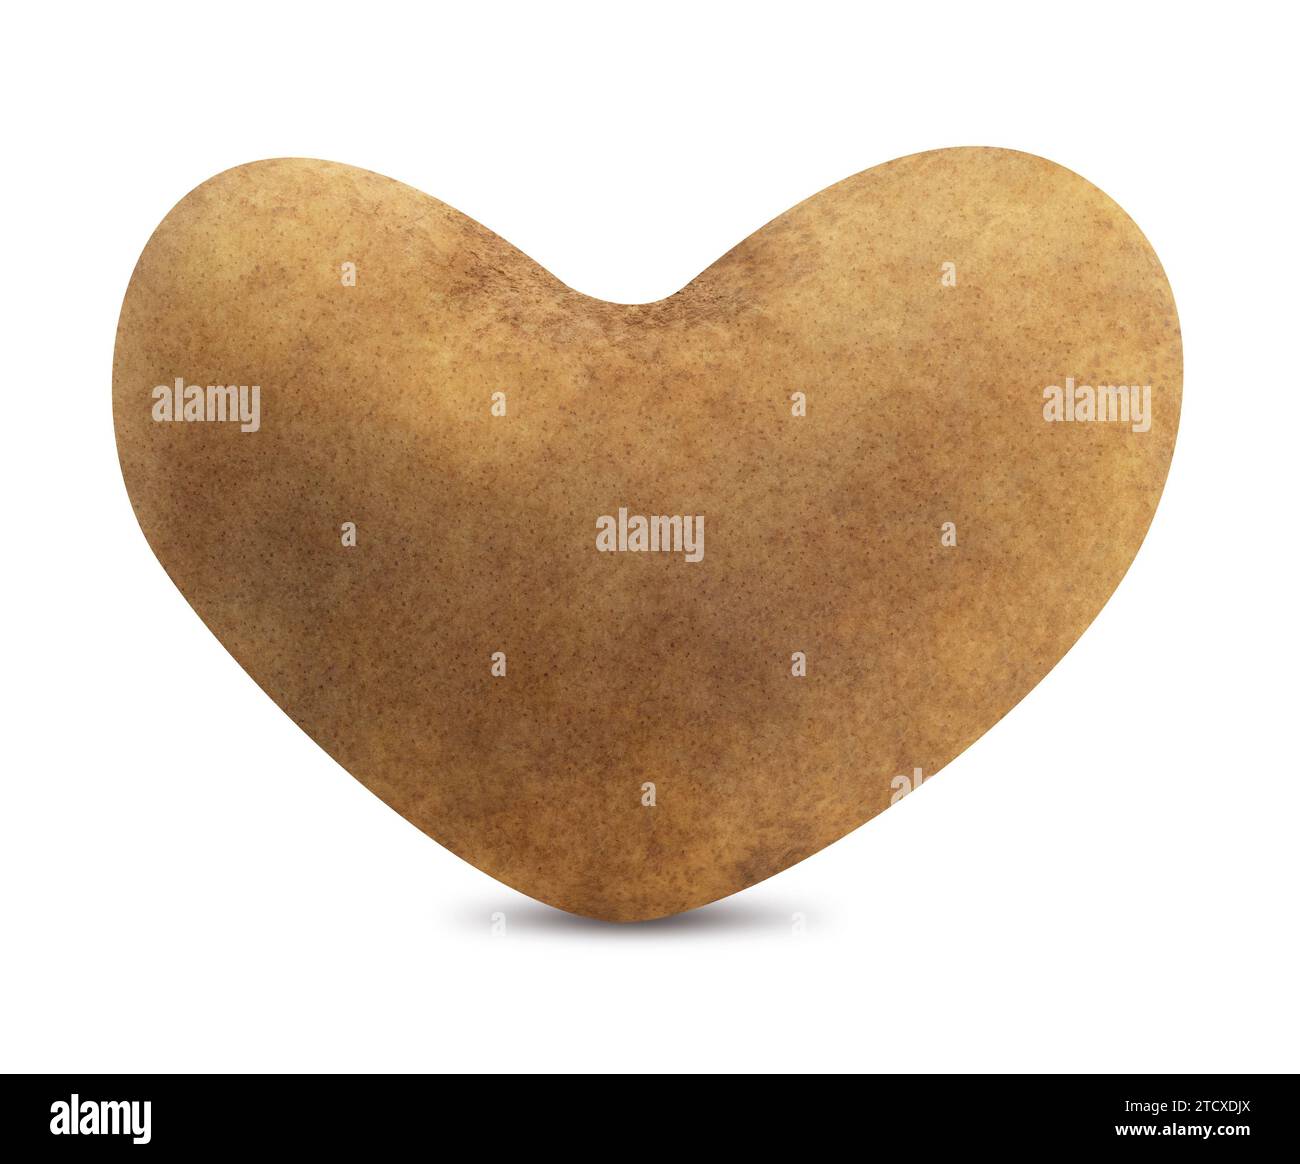 Isolated Heart Shape Potato Stock Photo